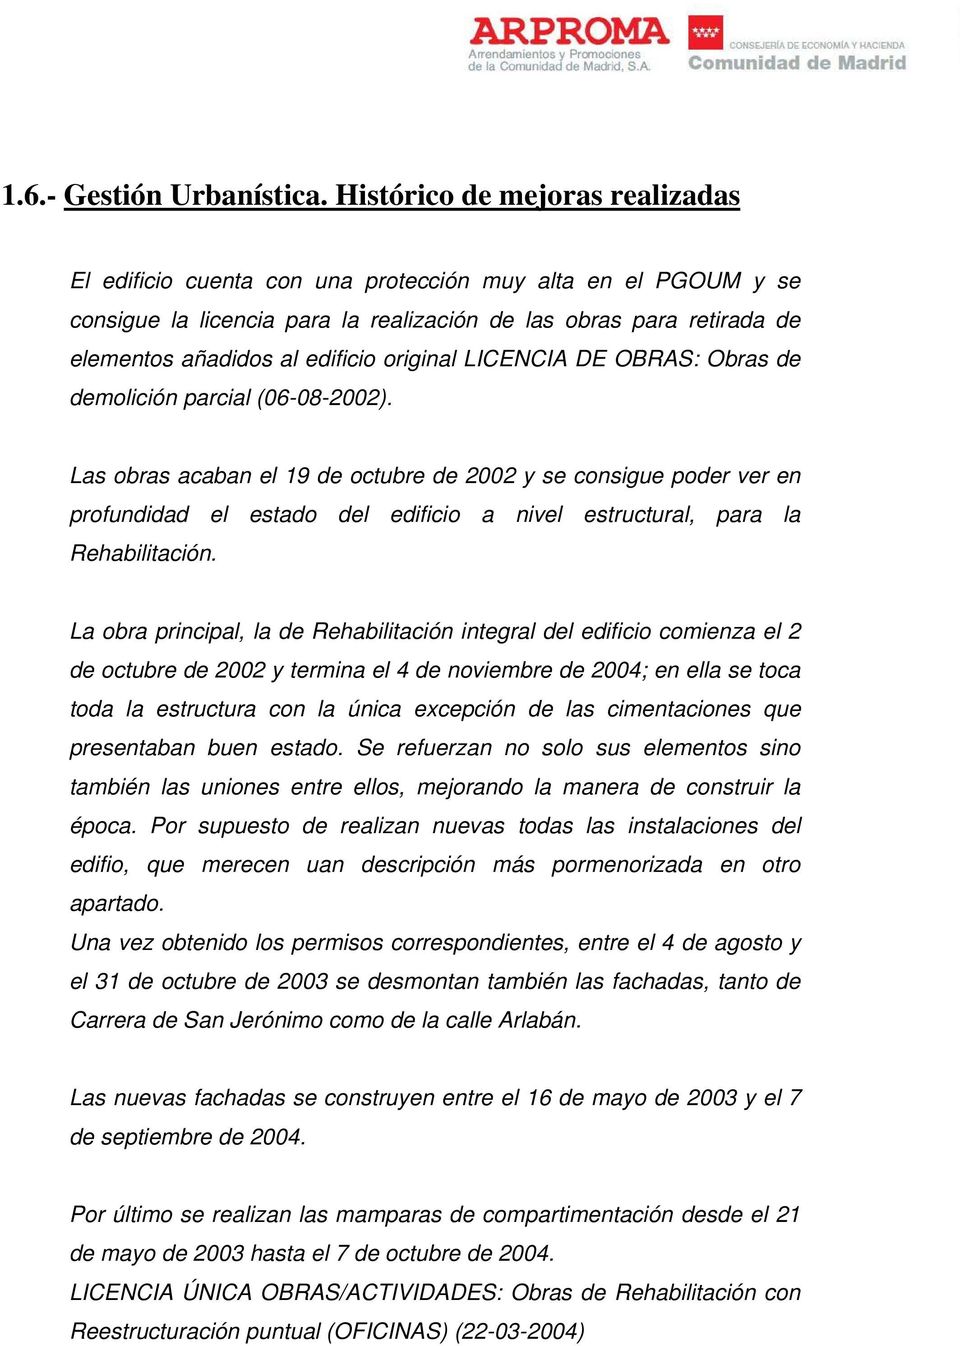 original LICENCIA DE OBRAS: Obras de demolición parcial (06-08-2002).